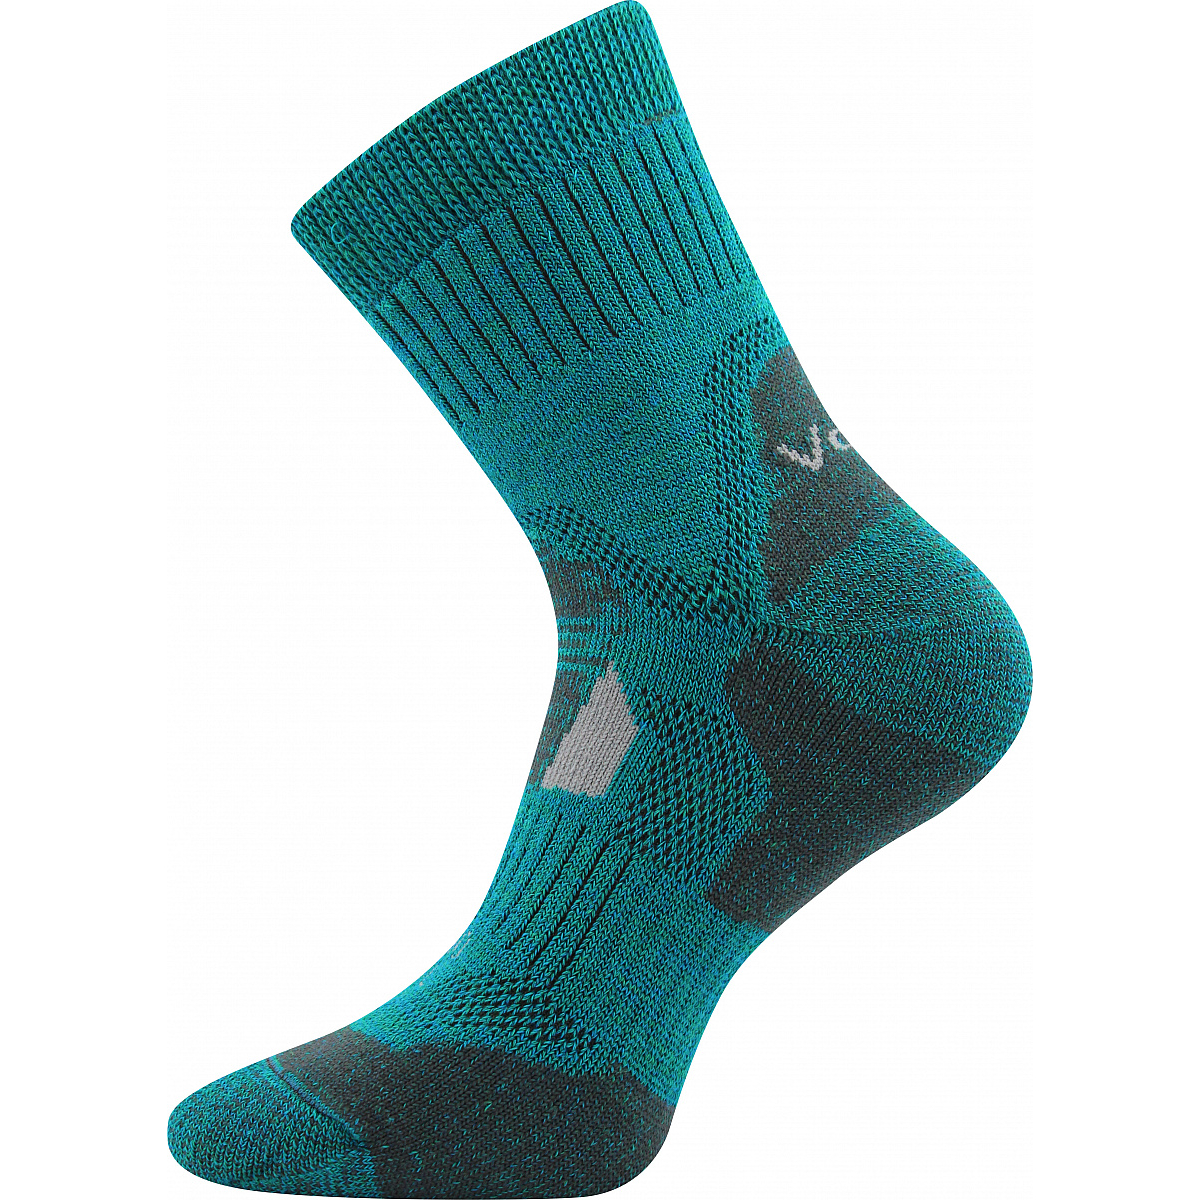 Extra teplé vlněné ponožky Voxx Stabil - modré-zelené, 43-46